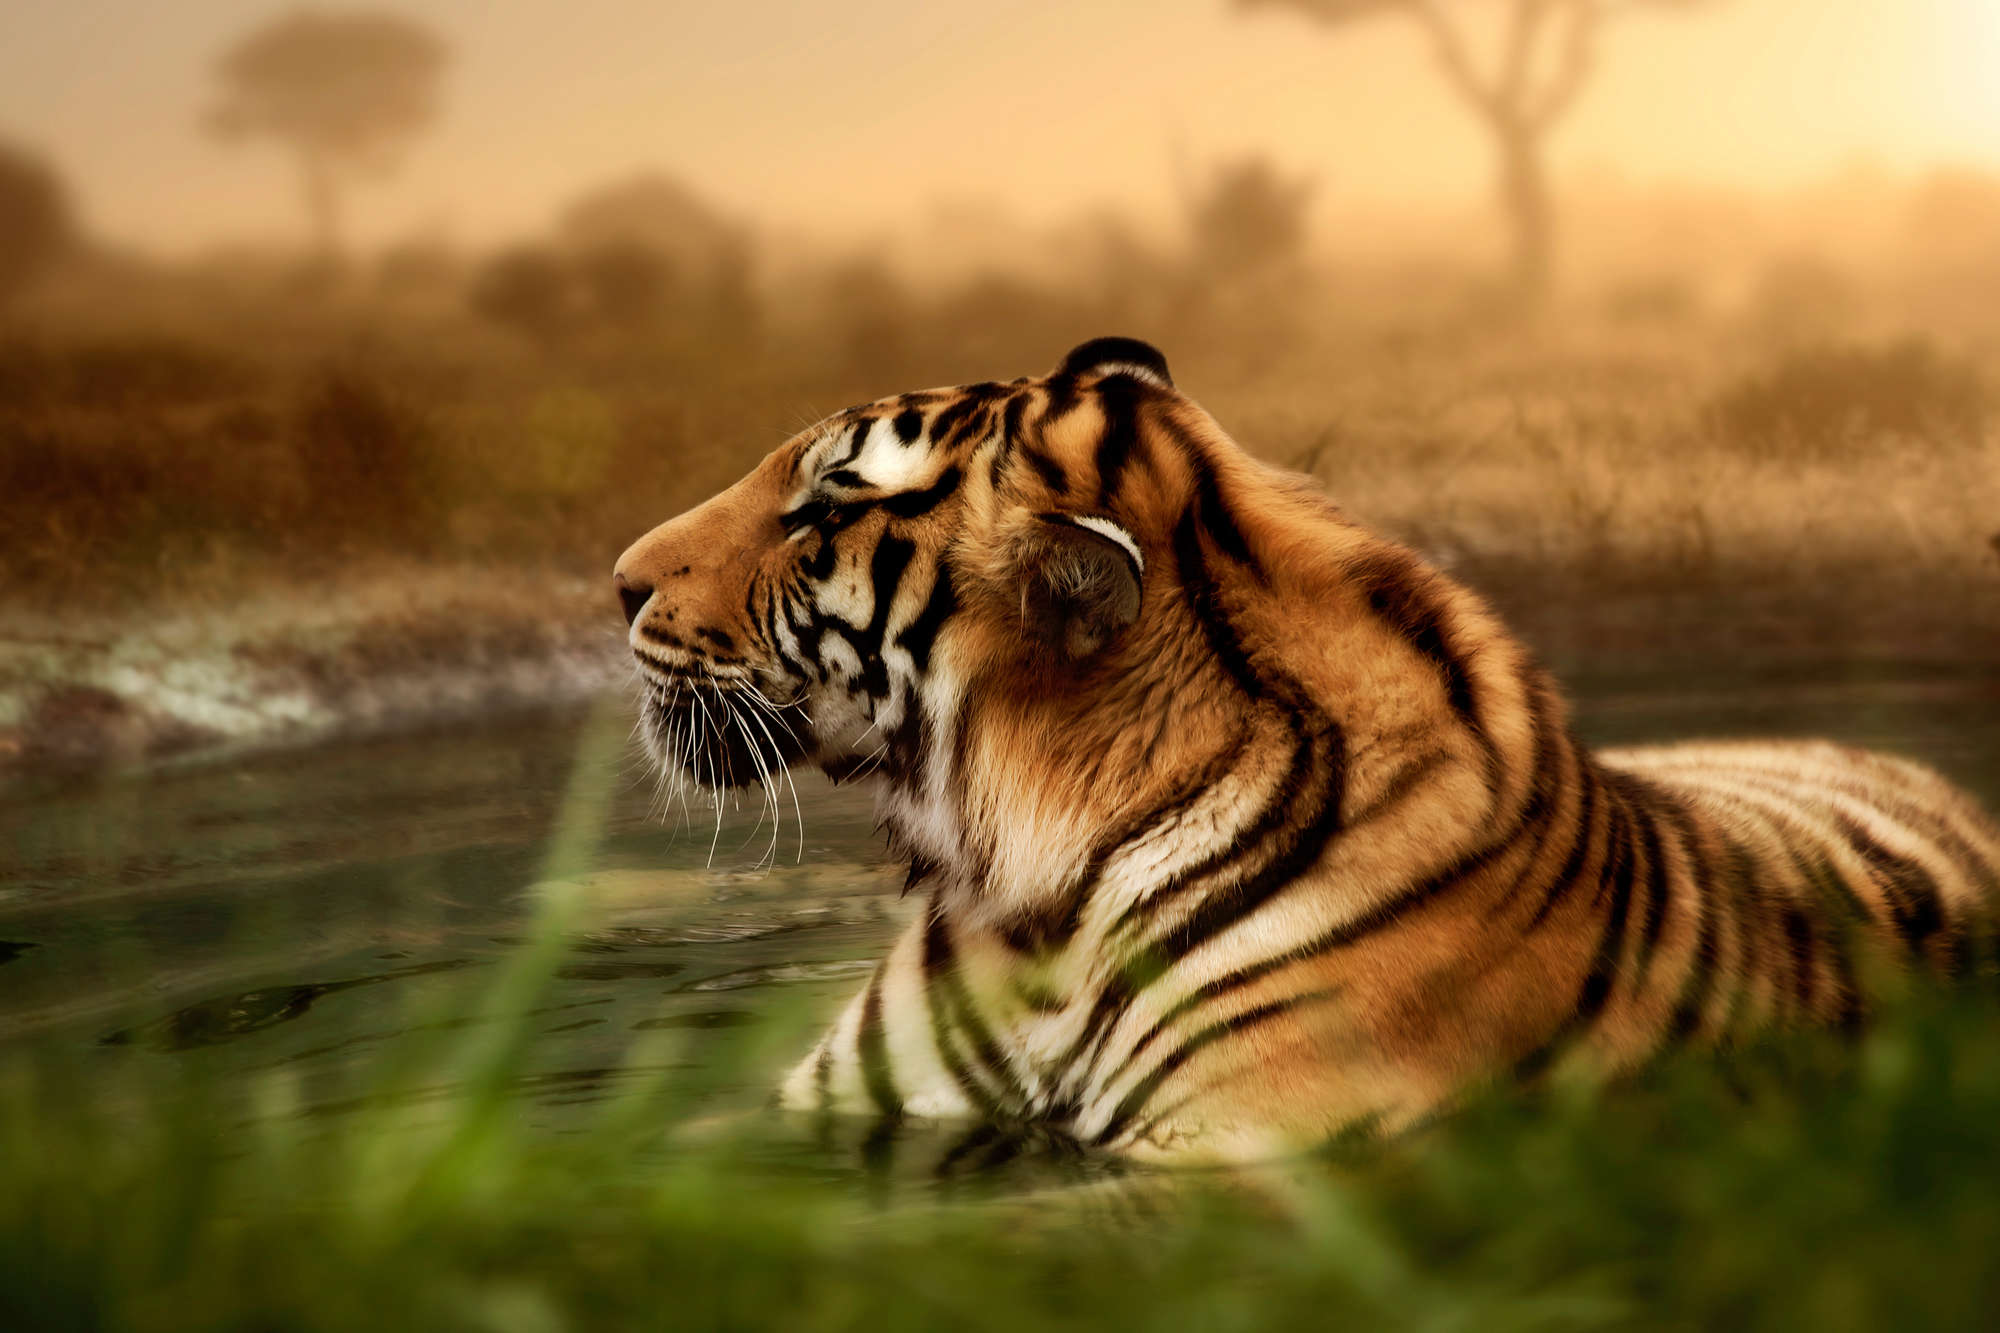             Tiger Fototapete in freier Wildbahn auf Strukturvlies
        